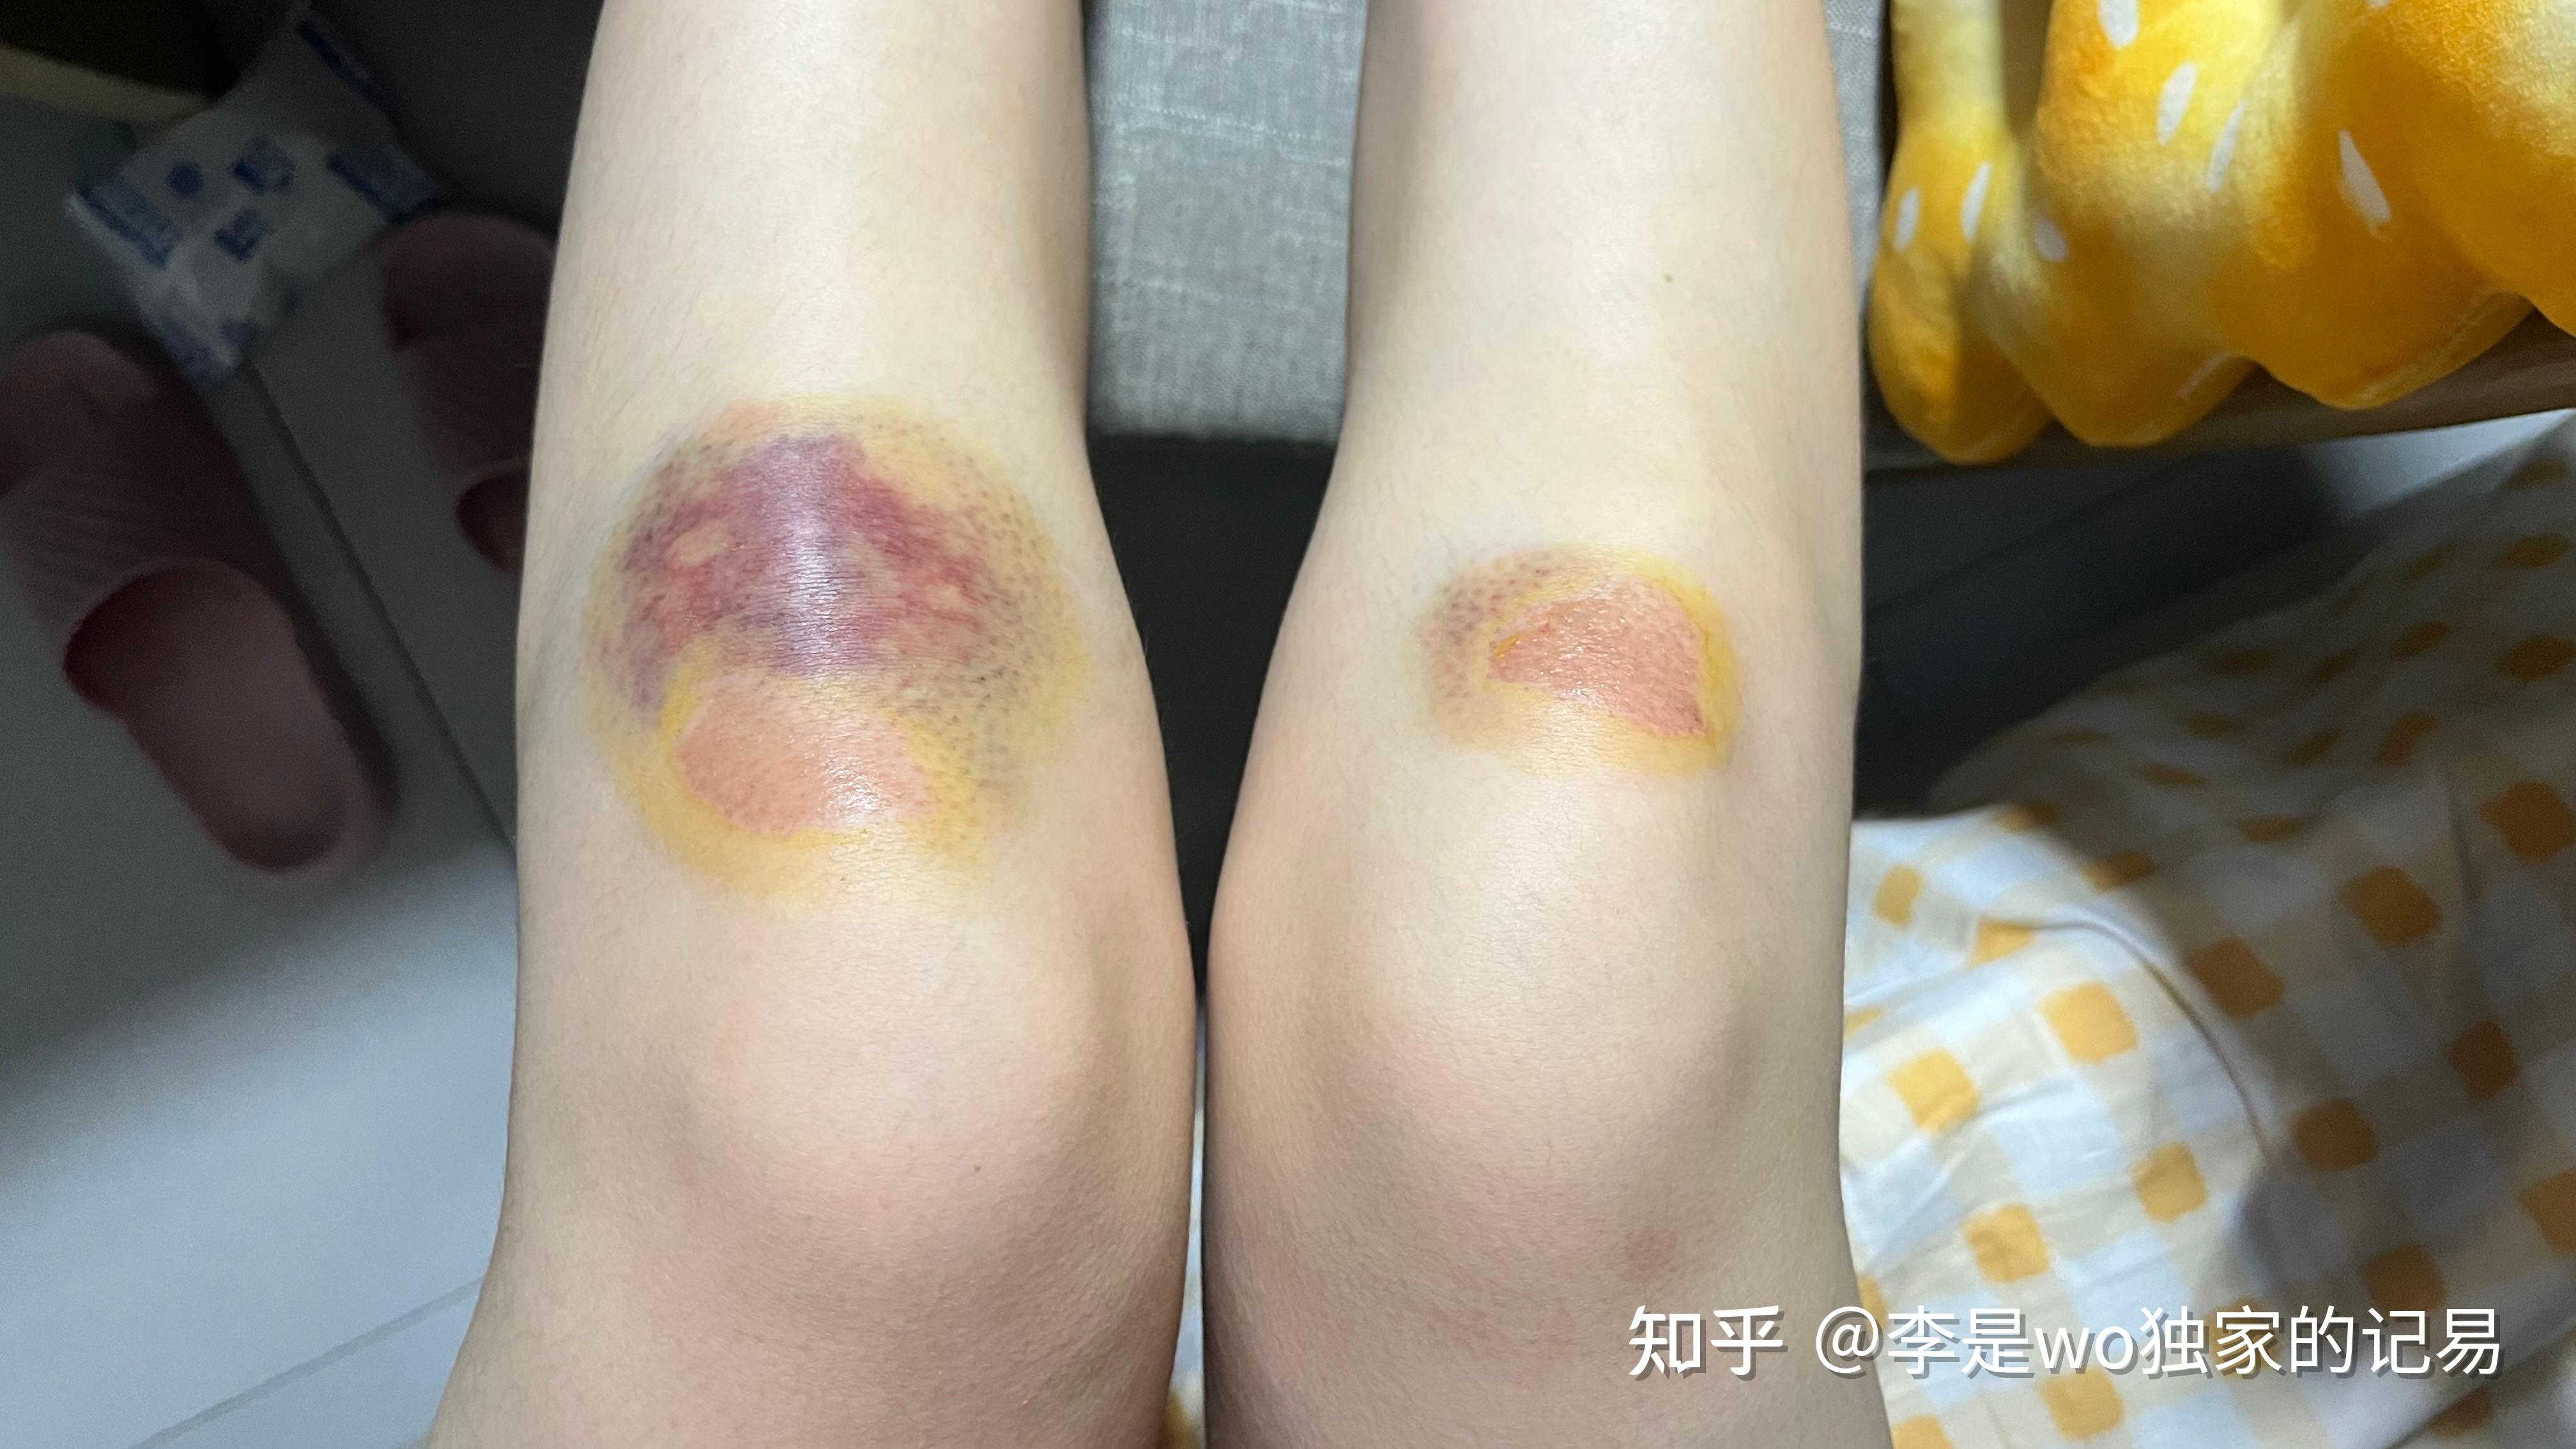 女孩脚受伤包扎的图片大全_脚受伤包扎视频_微信公众号文章